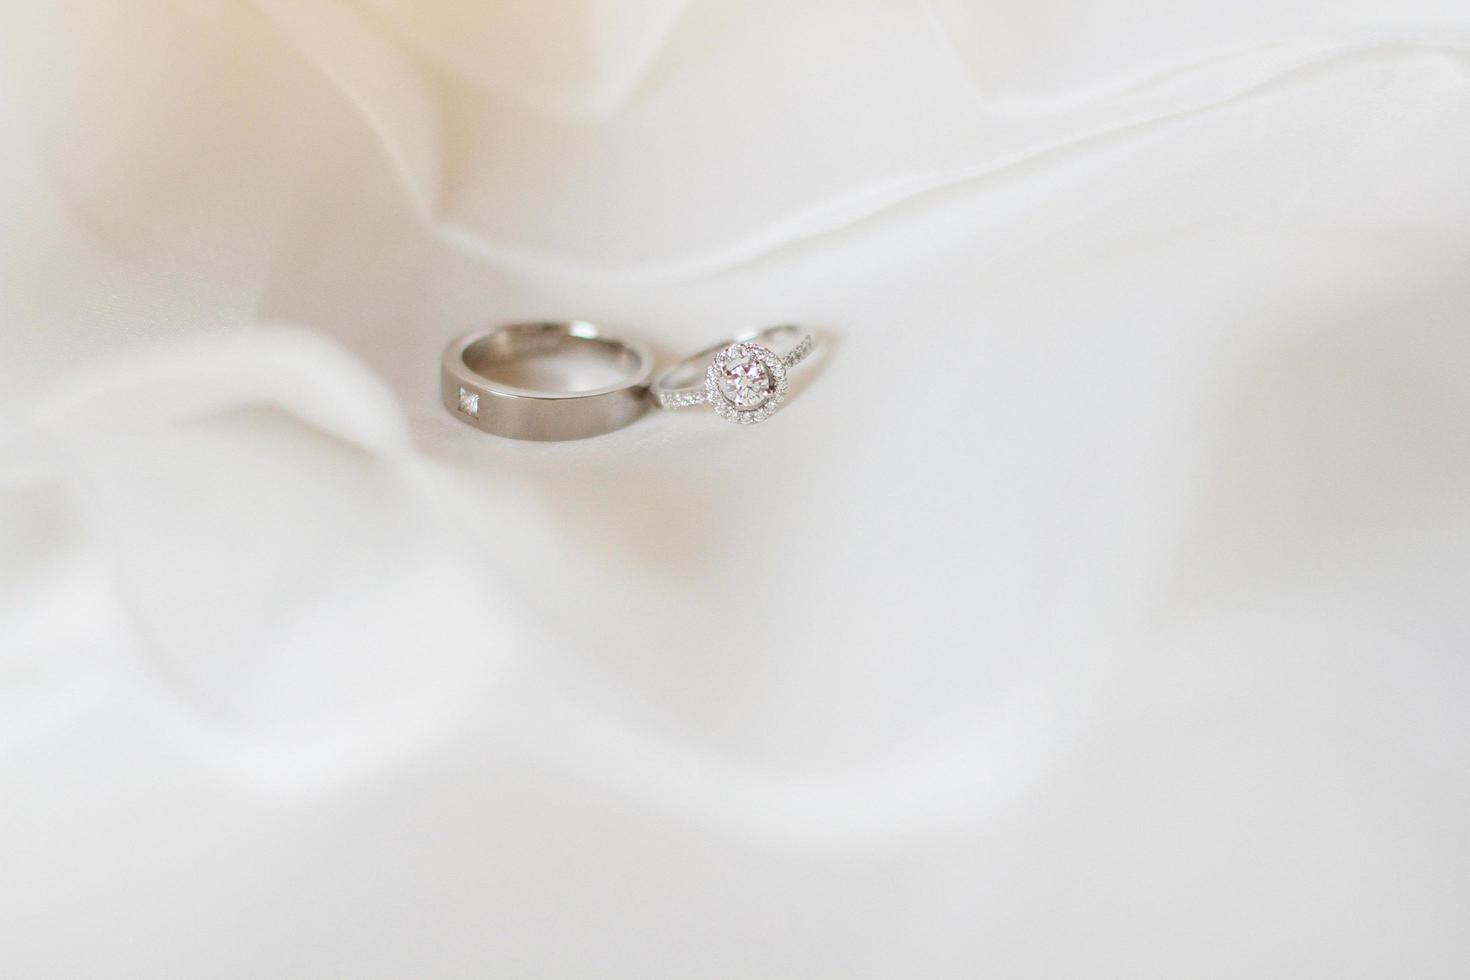 prata e diamante argolas do noivo e noiva em uma branco pano dentro Casamento dia. dia dos namorados dia e amor para celebração conceito. foto